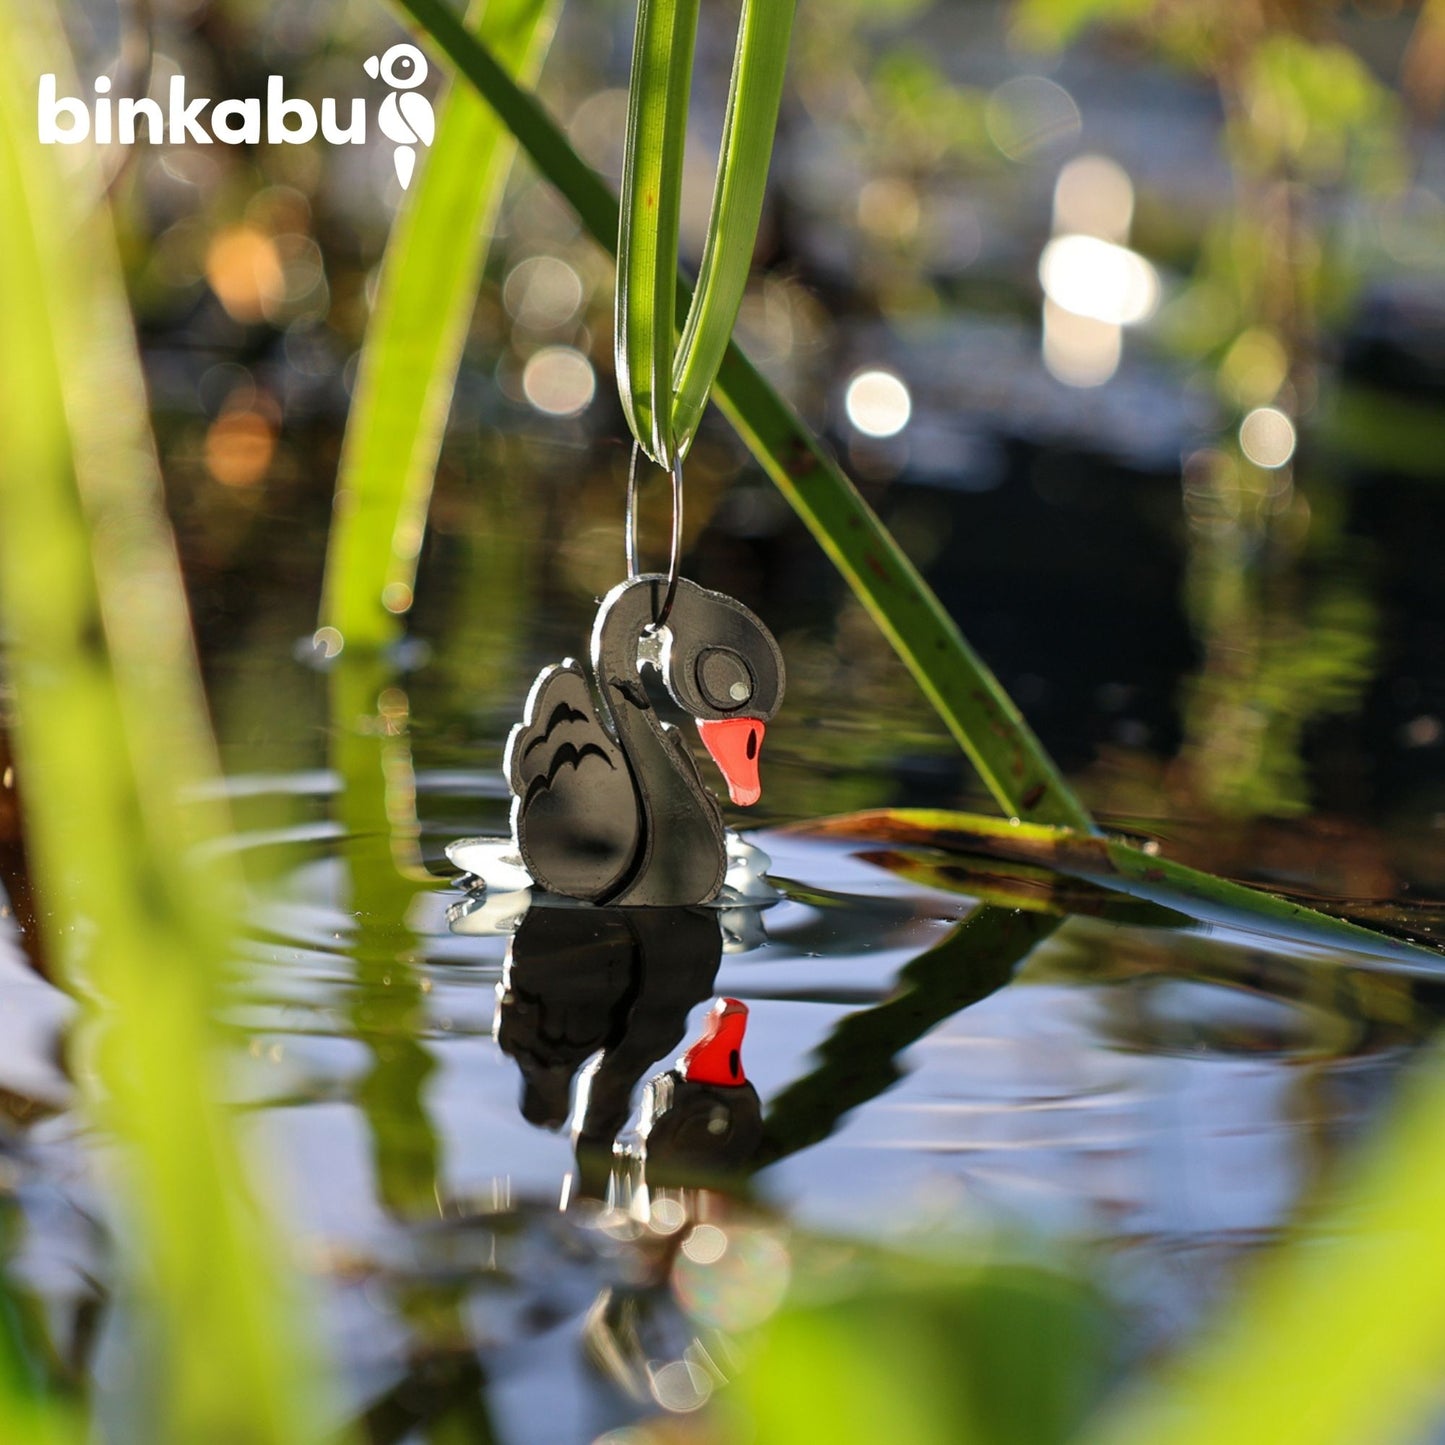 BINKABU Black Swan Handmade Acrylic Bird Earrings